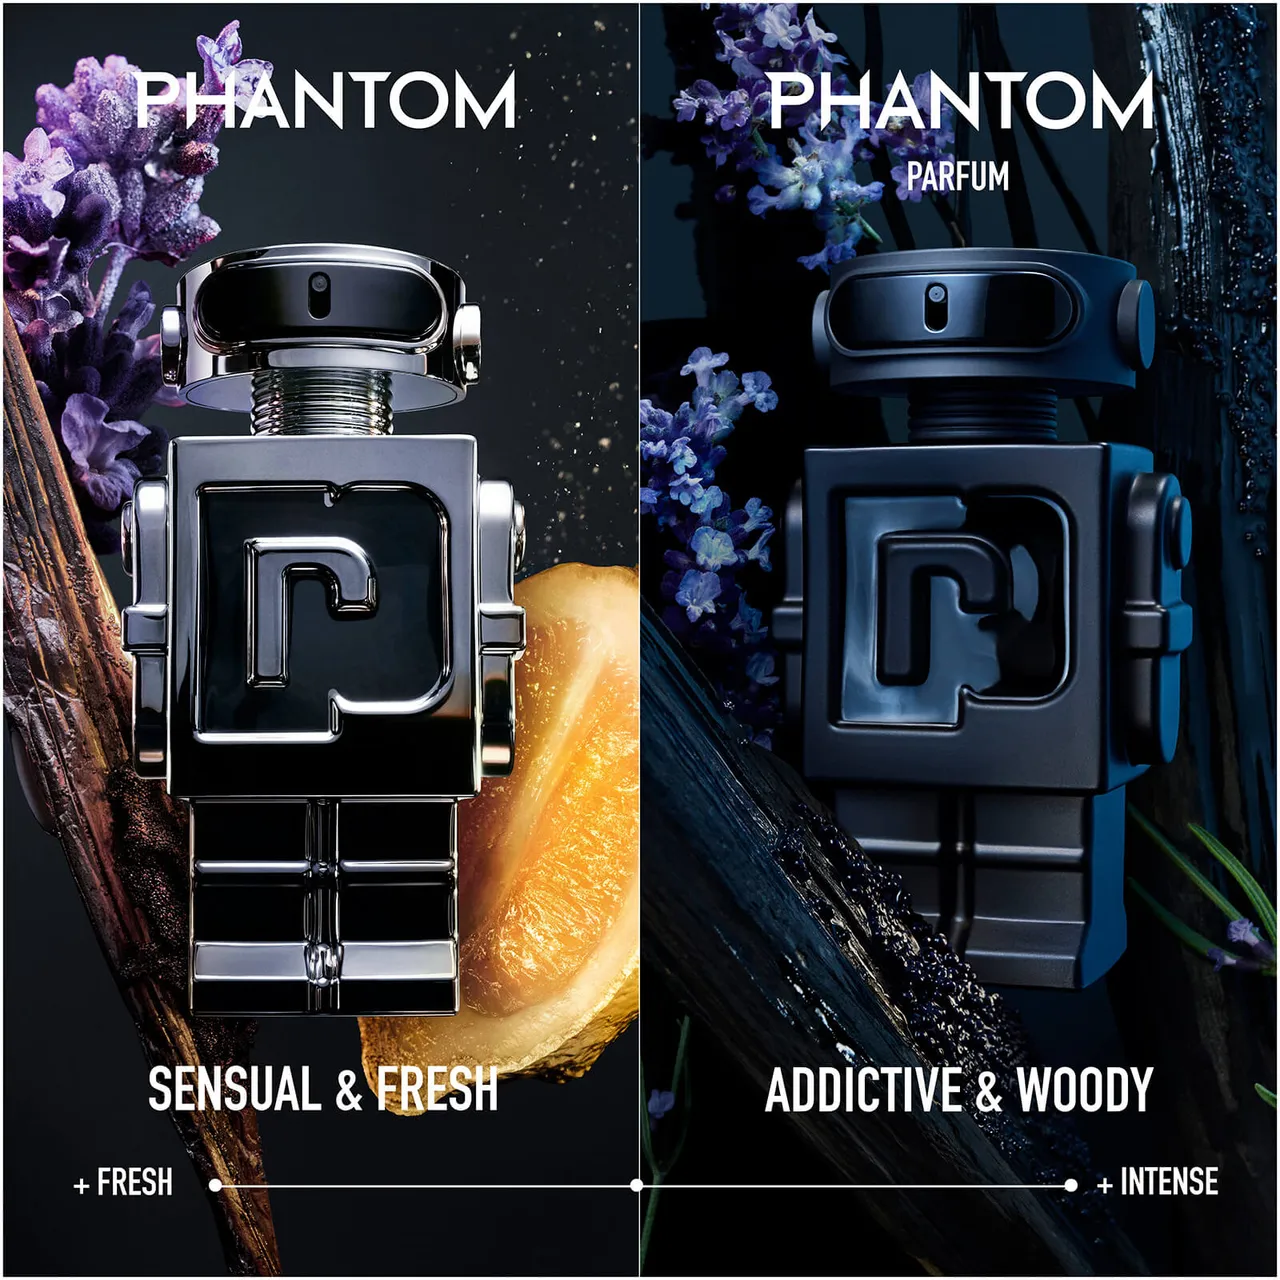 Rabanne Phantom Parfum 50ml